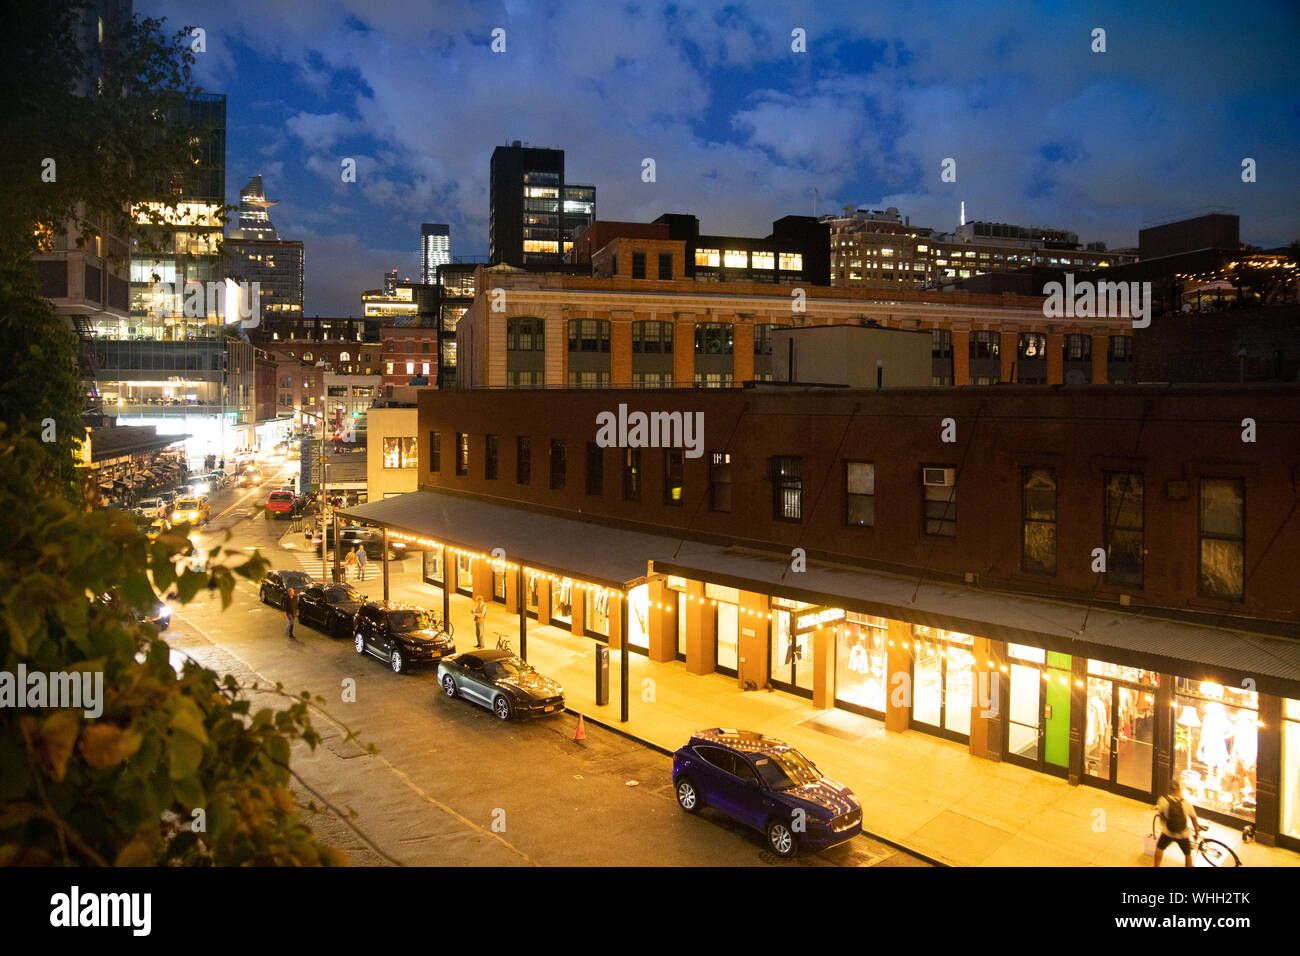 NEW YORK - 24 août 2019 - Vue de dessus de la rue de la ville dans le Meatpacking district de Manhattan vu la nuit avec des lumières. Banque D'Images